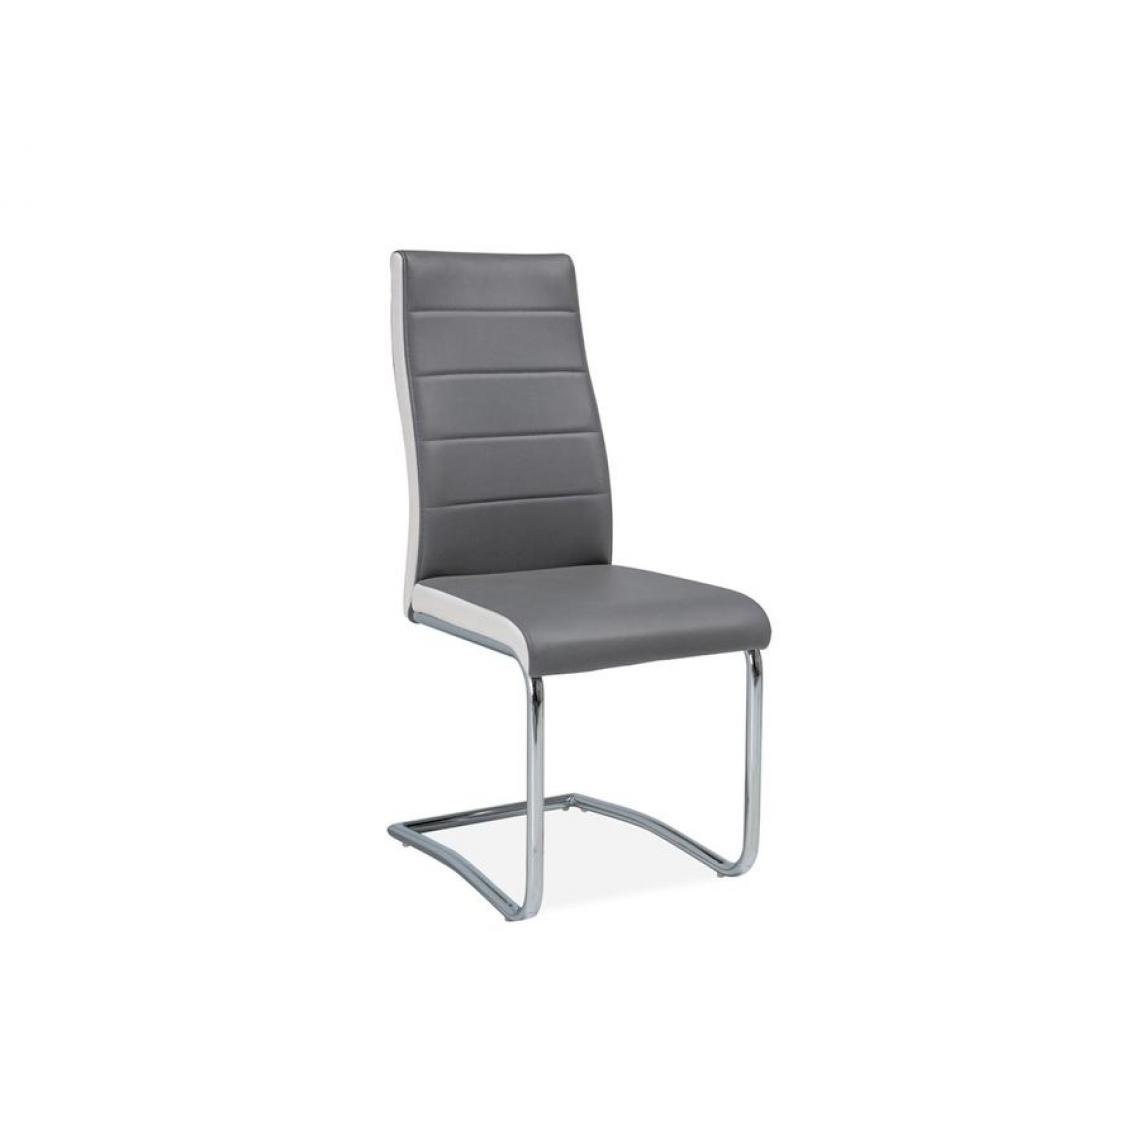 Hucoco - HEINT | Chaise moderne avec coutures salon/salle à manger | 96x46x46cm | Rembourrage cuir écologique | Dossier confortable - Gris - Chaises